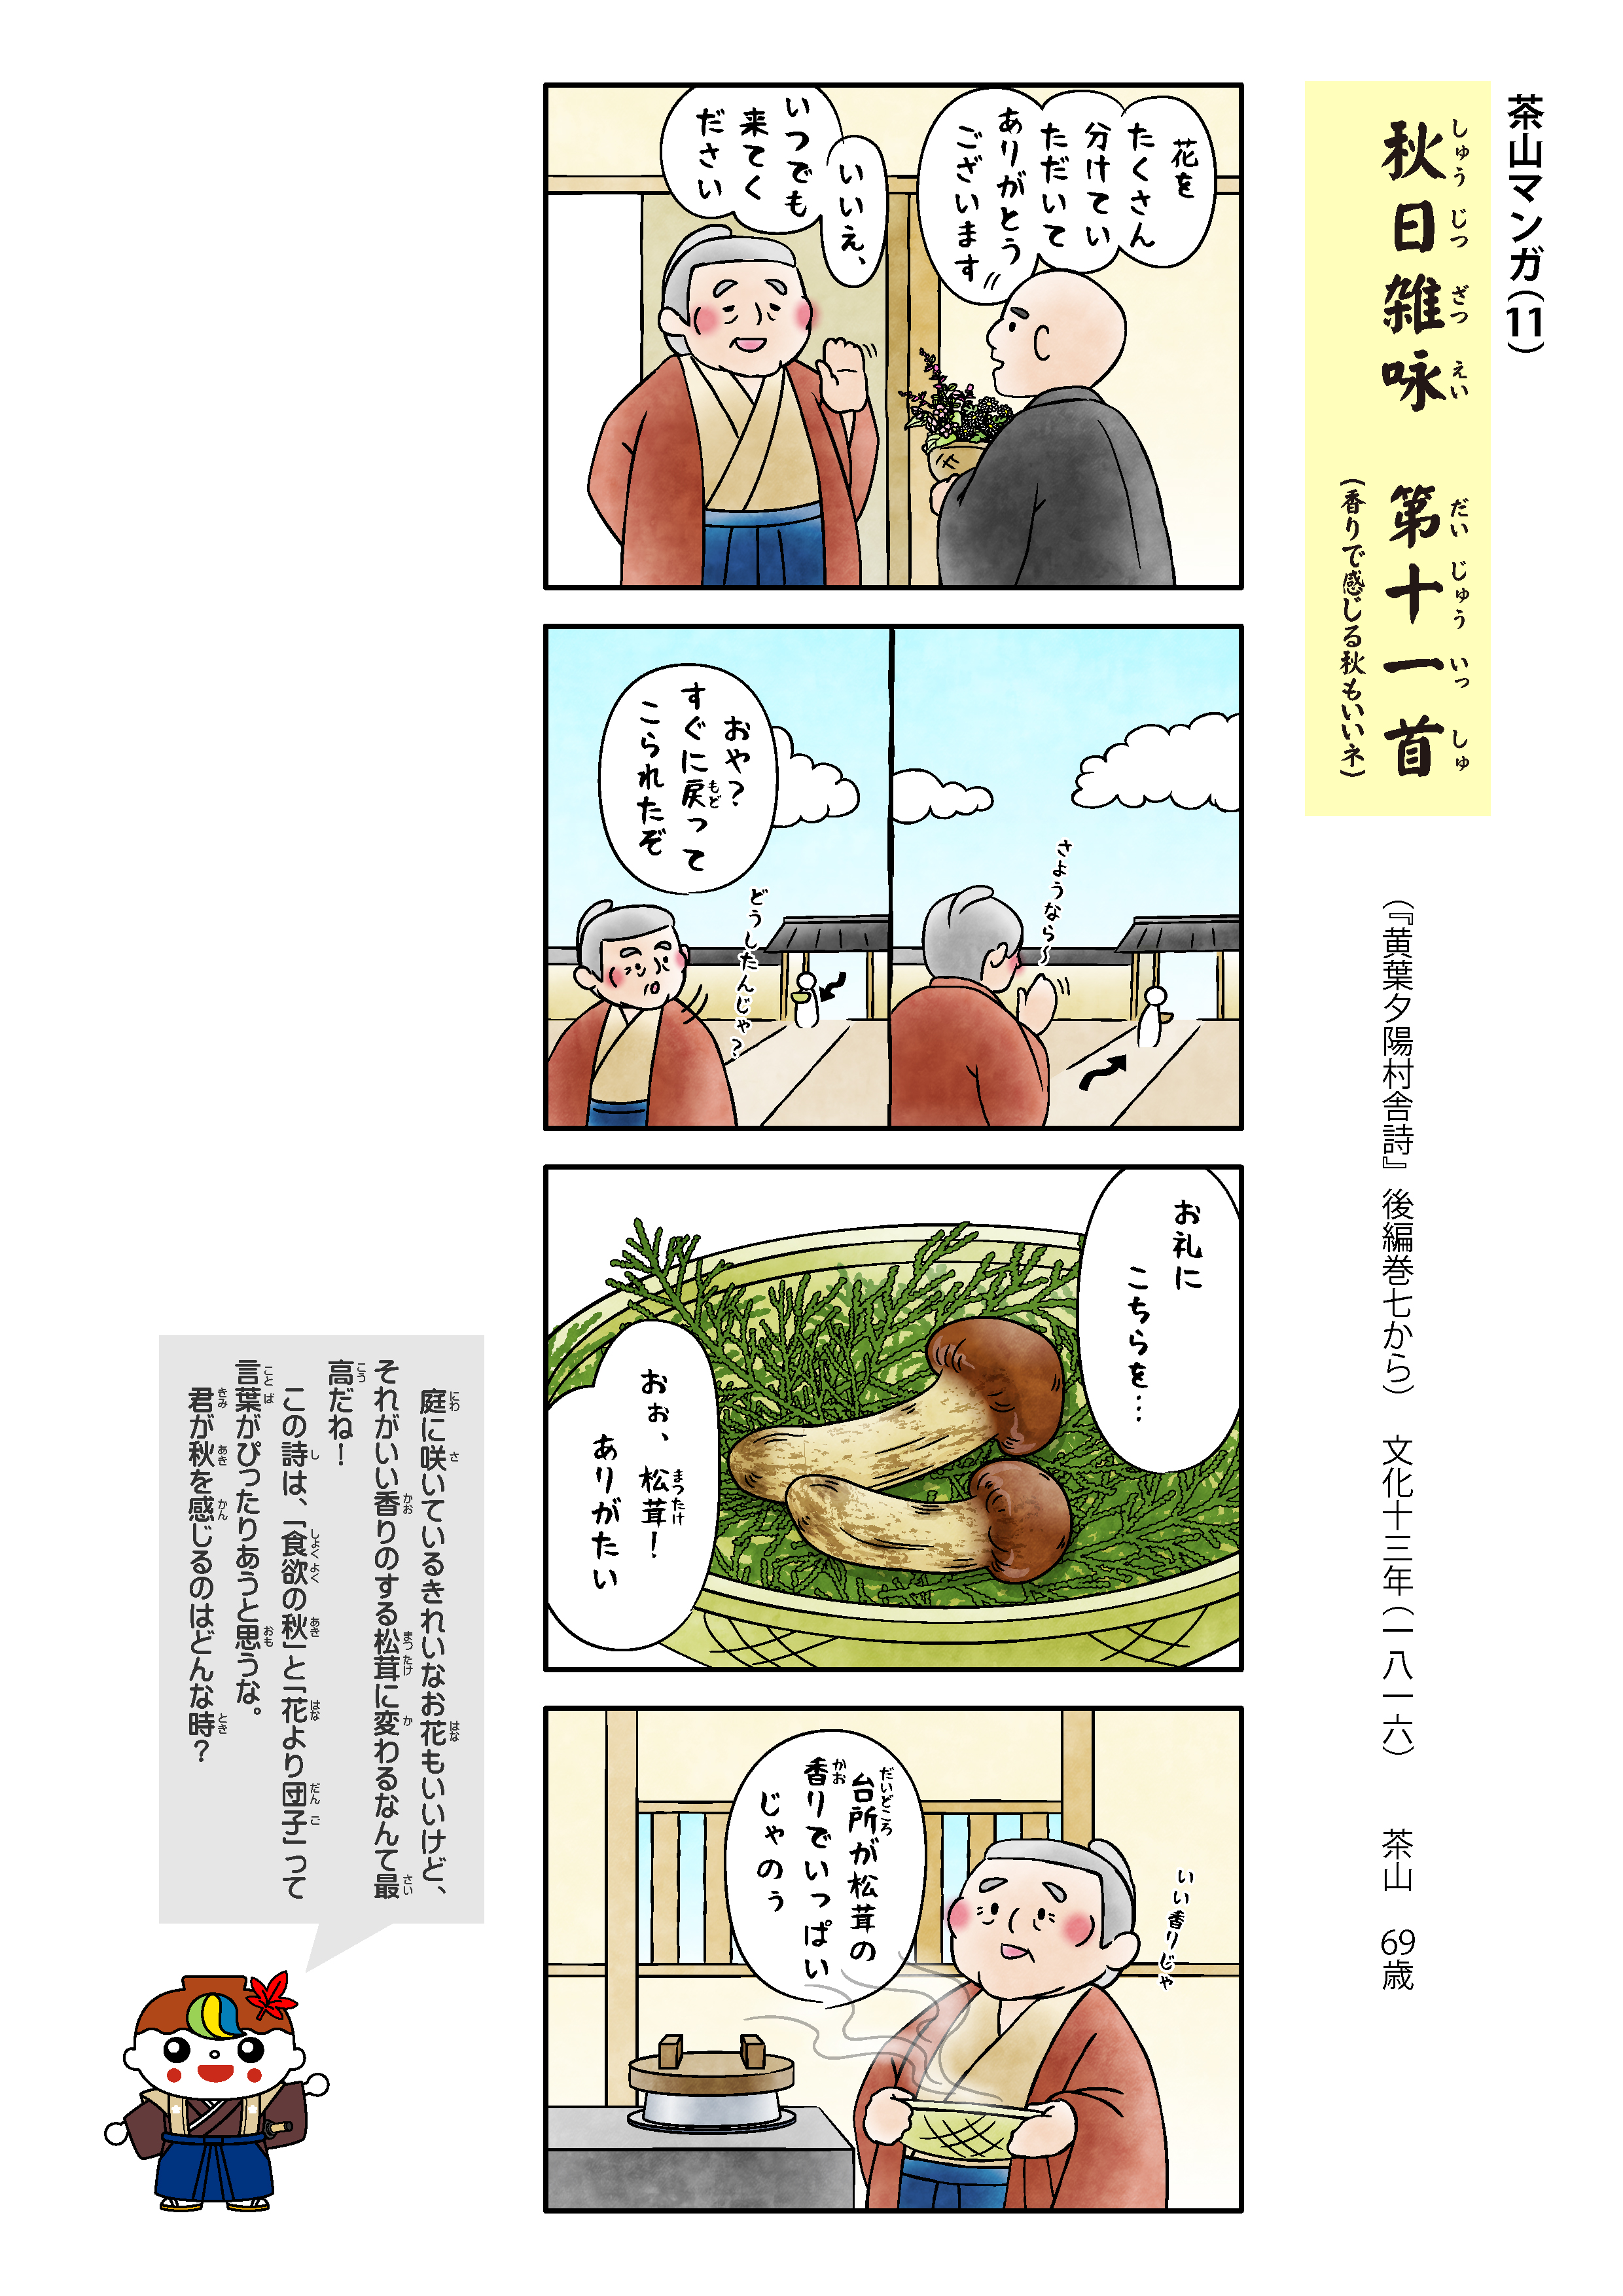 茶山マンガ11「秋日雑咏」